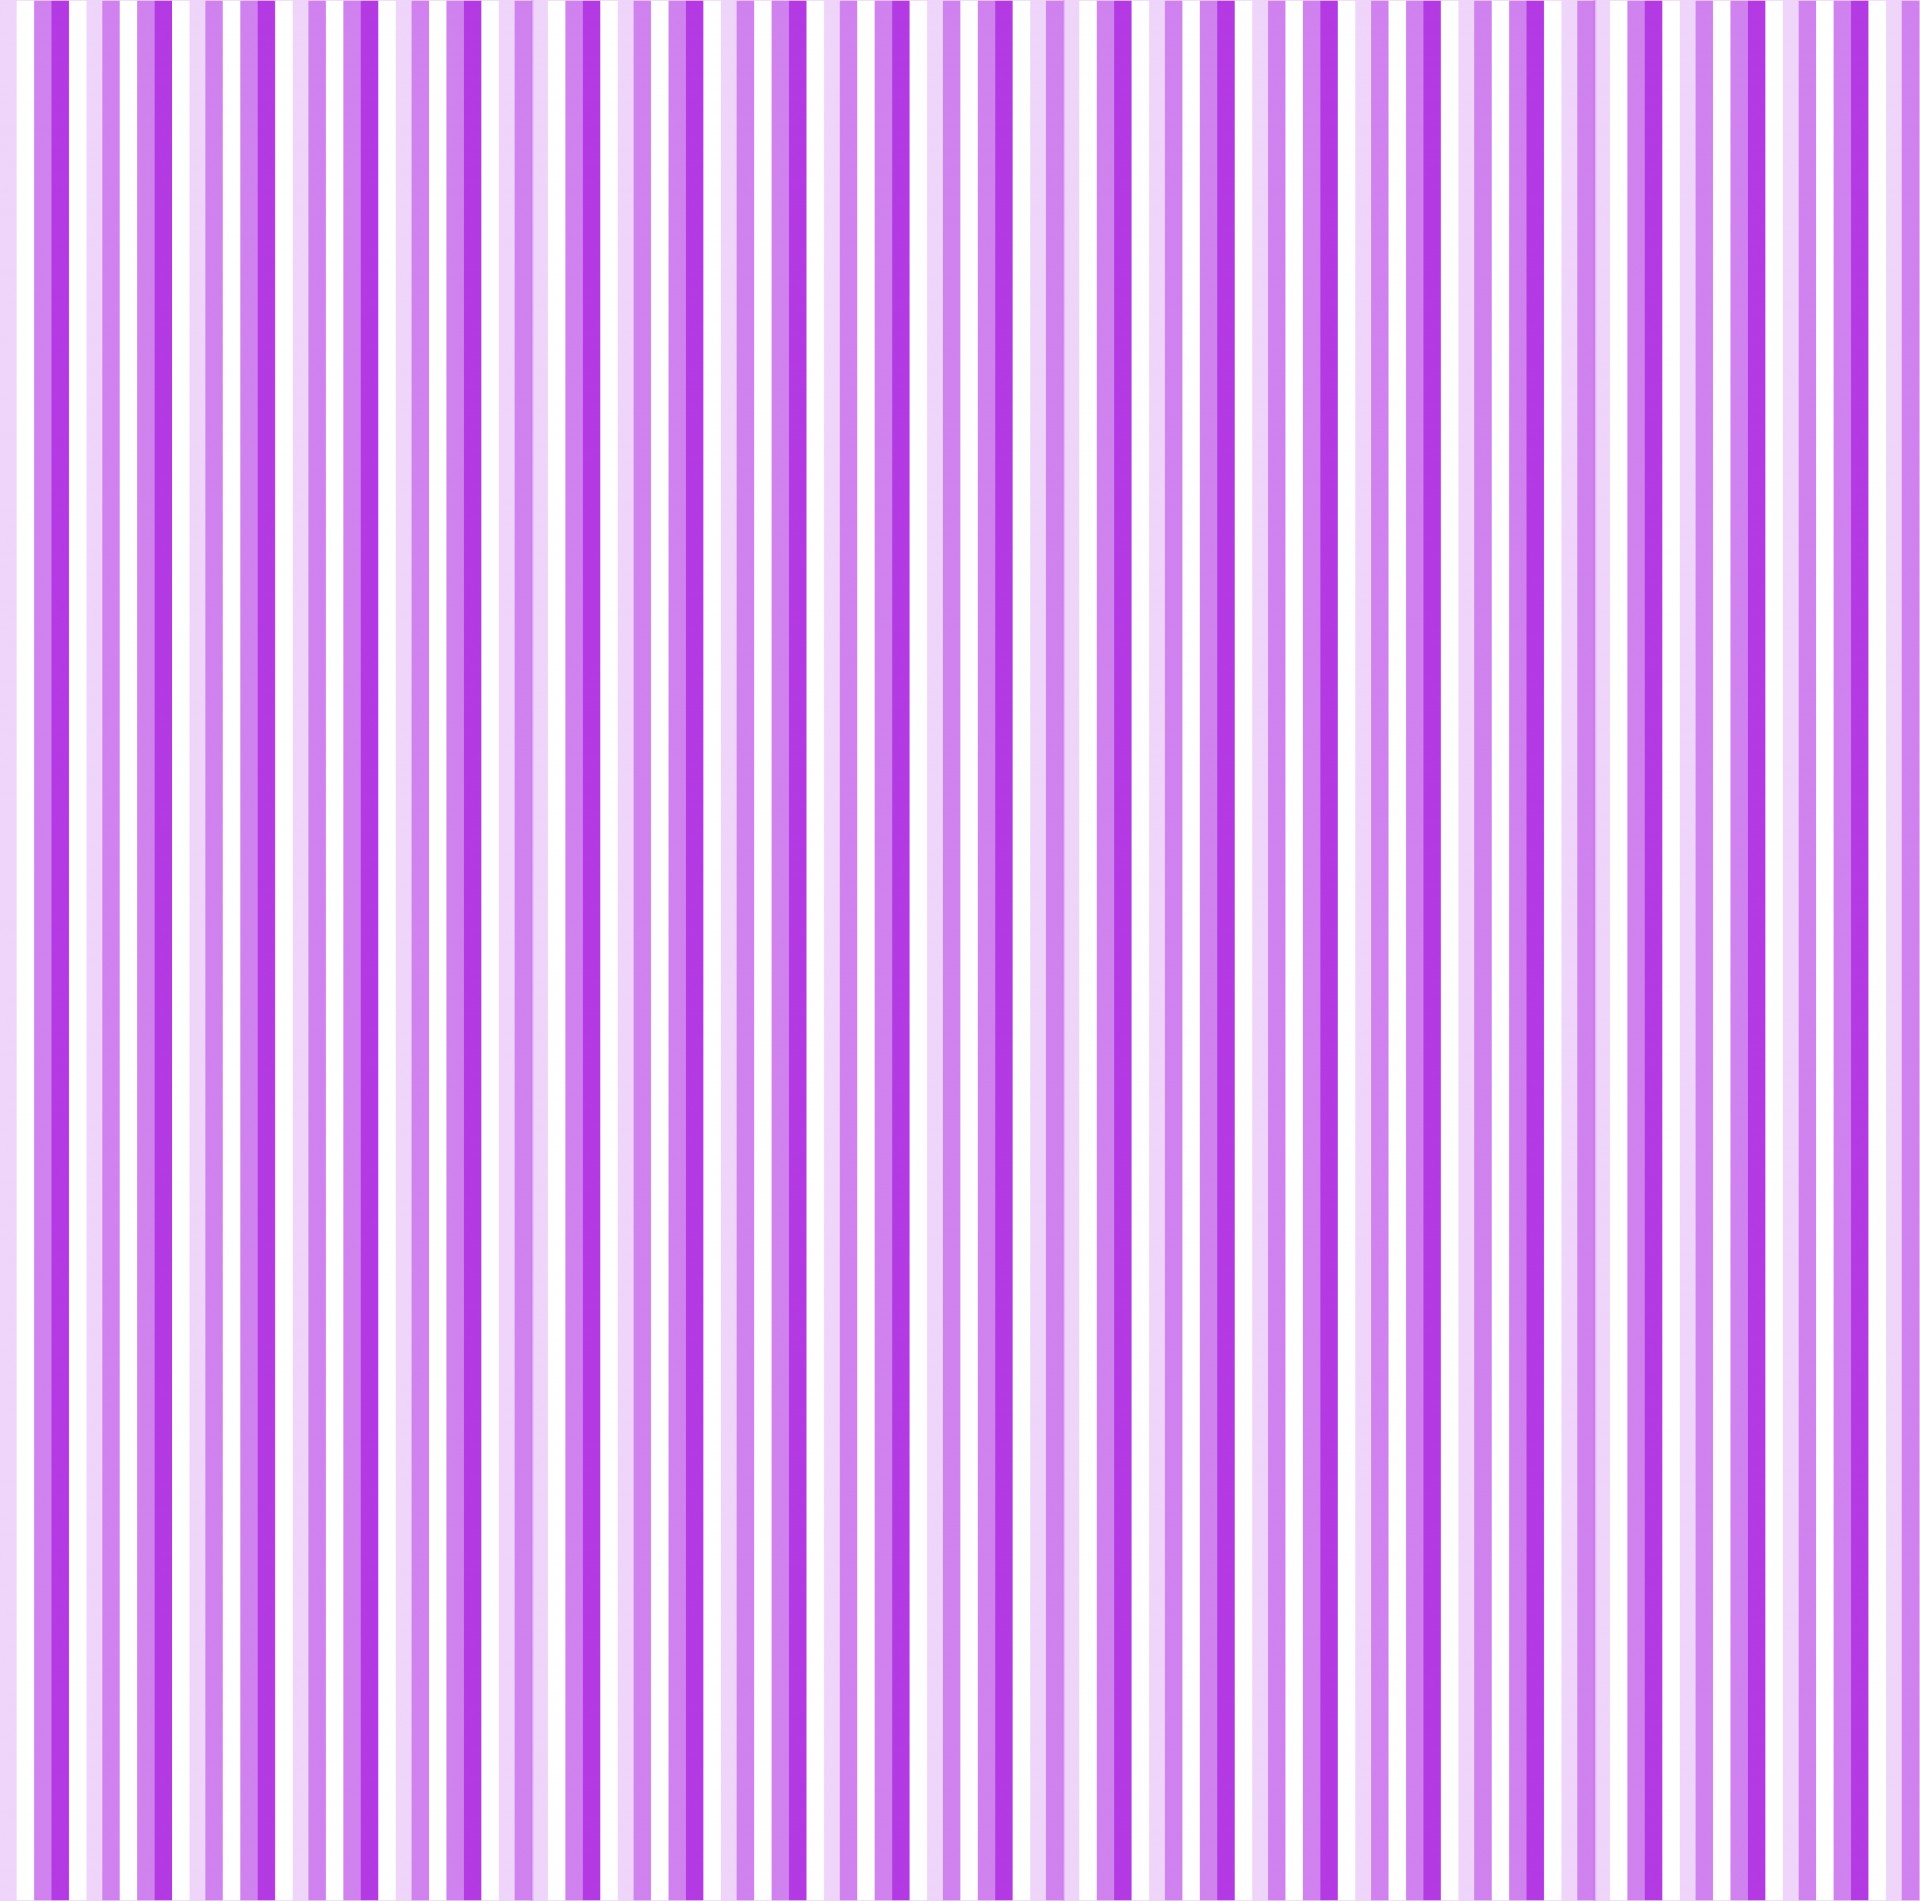 Violet Stripes Background